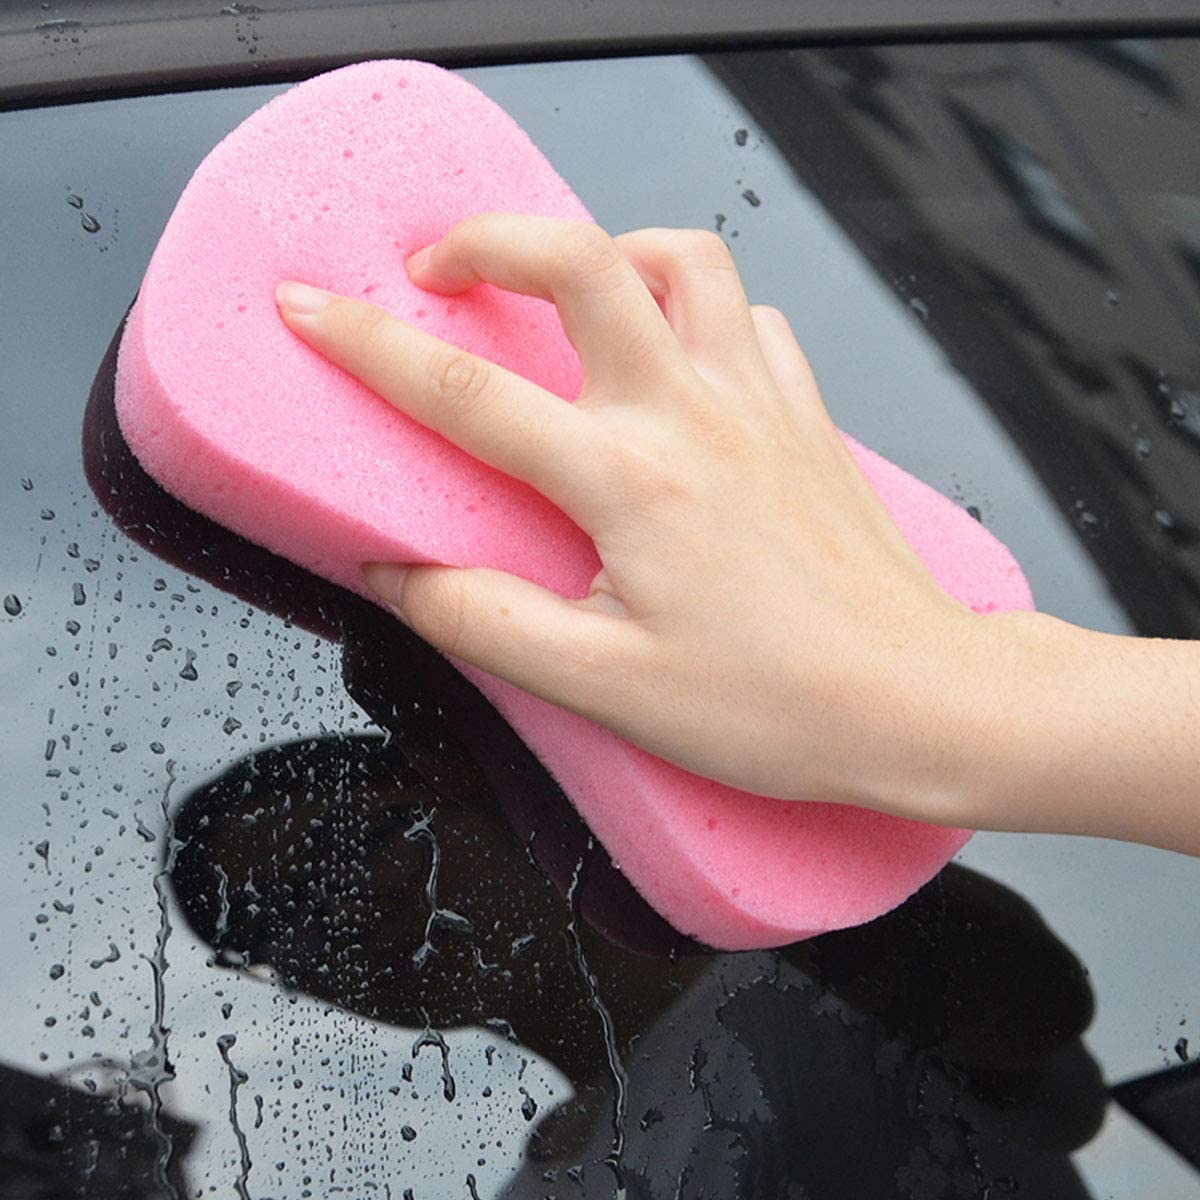 12 Pcs Car Wash Sponges for Car Cleaning, Window Washing Auto Foam Grid  Sponges Large Car Sponges High Foam Cleaning Washing Sponge Pad Car  Cleaning